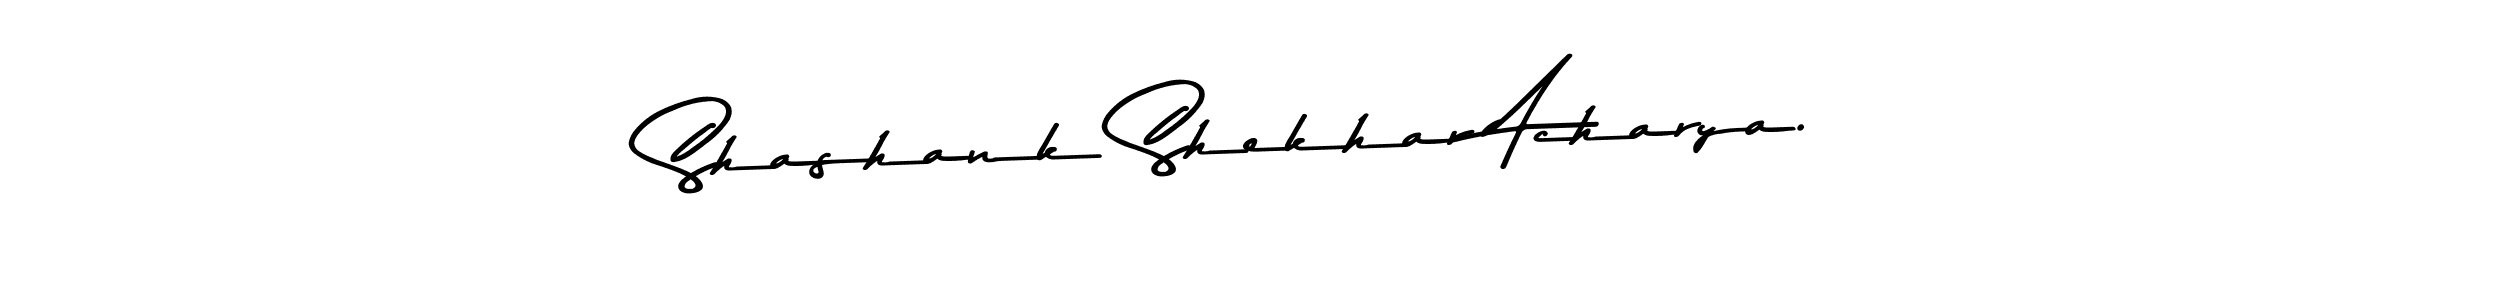 Check out images of Autograph of Shashank Shekhar Acharya. name. Actor Shashank Shekhar Acharya. Signature Style. Asem Kandis PERSONAL USE is a professional sign style online. Shashank Shekhar Acharya. signature style 9 images and pictures png